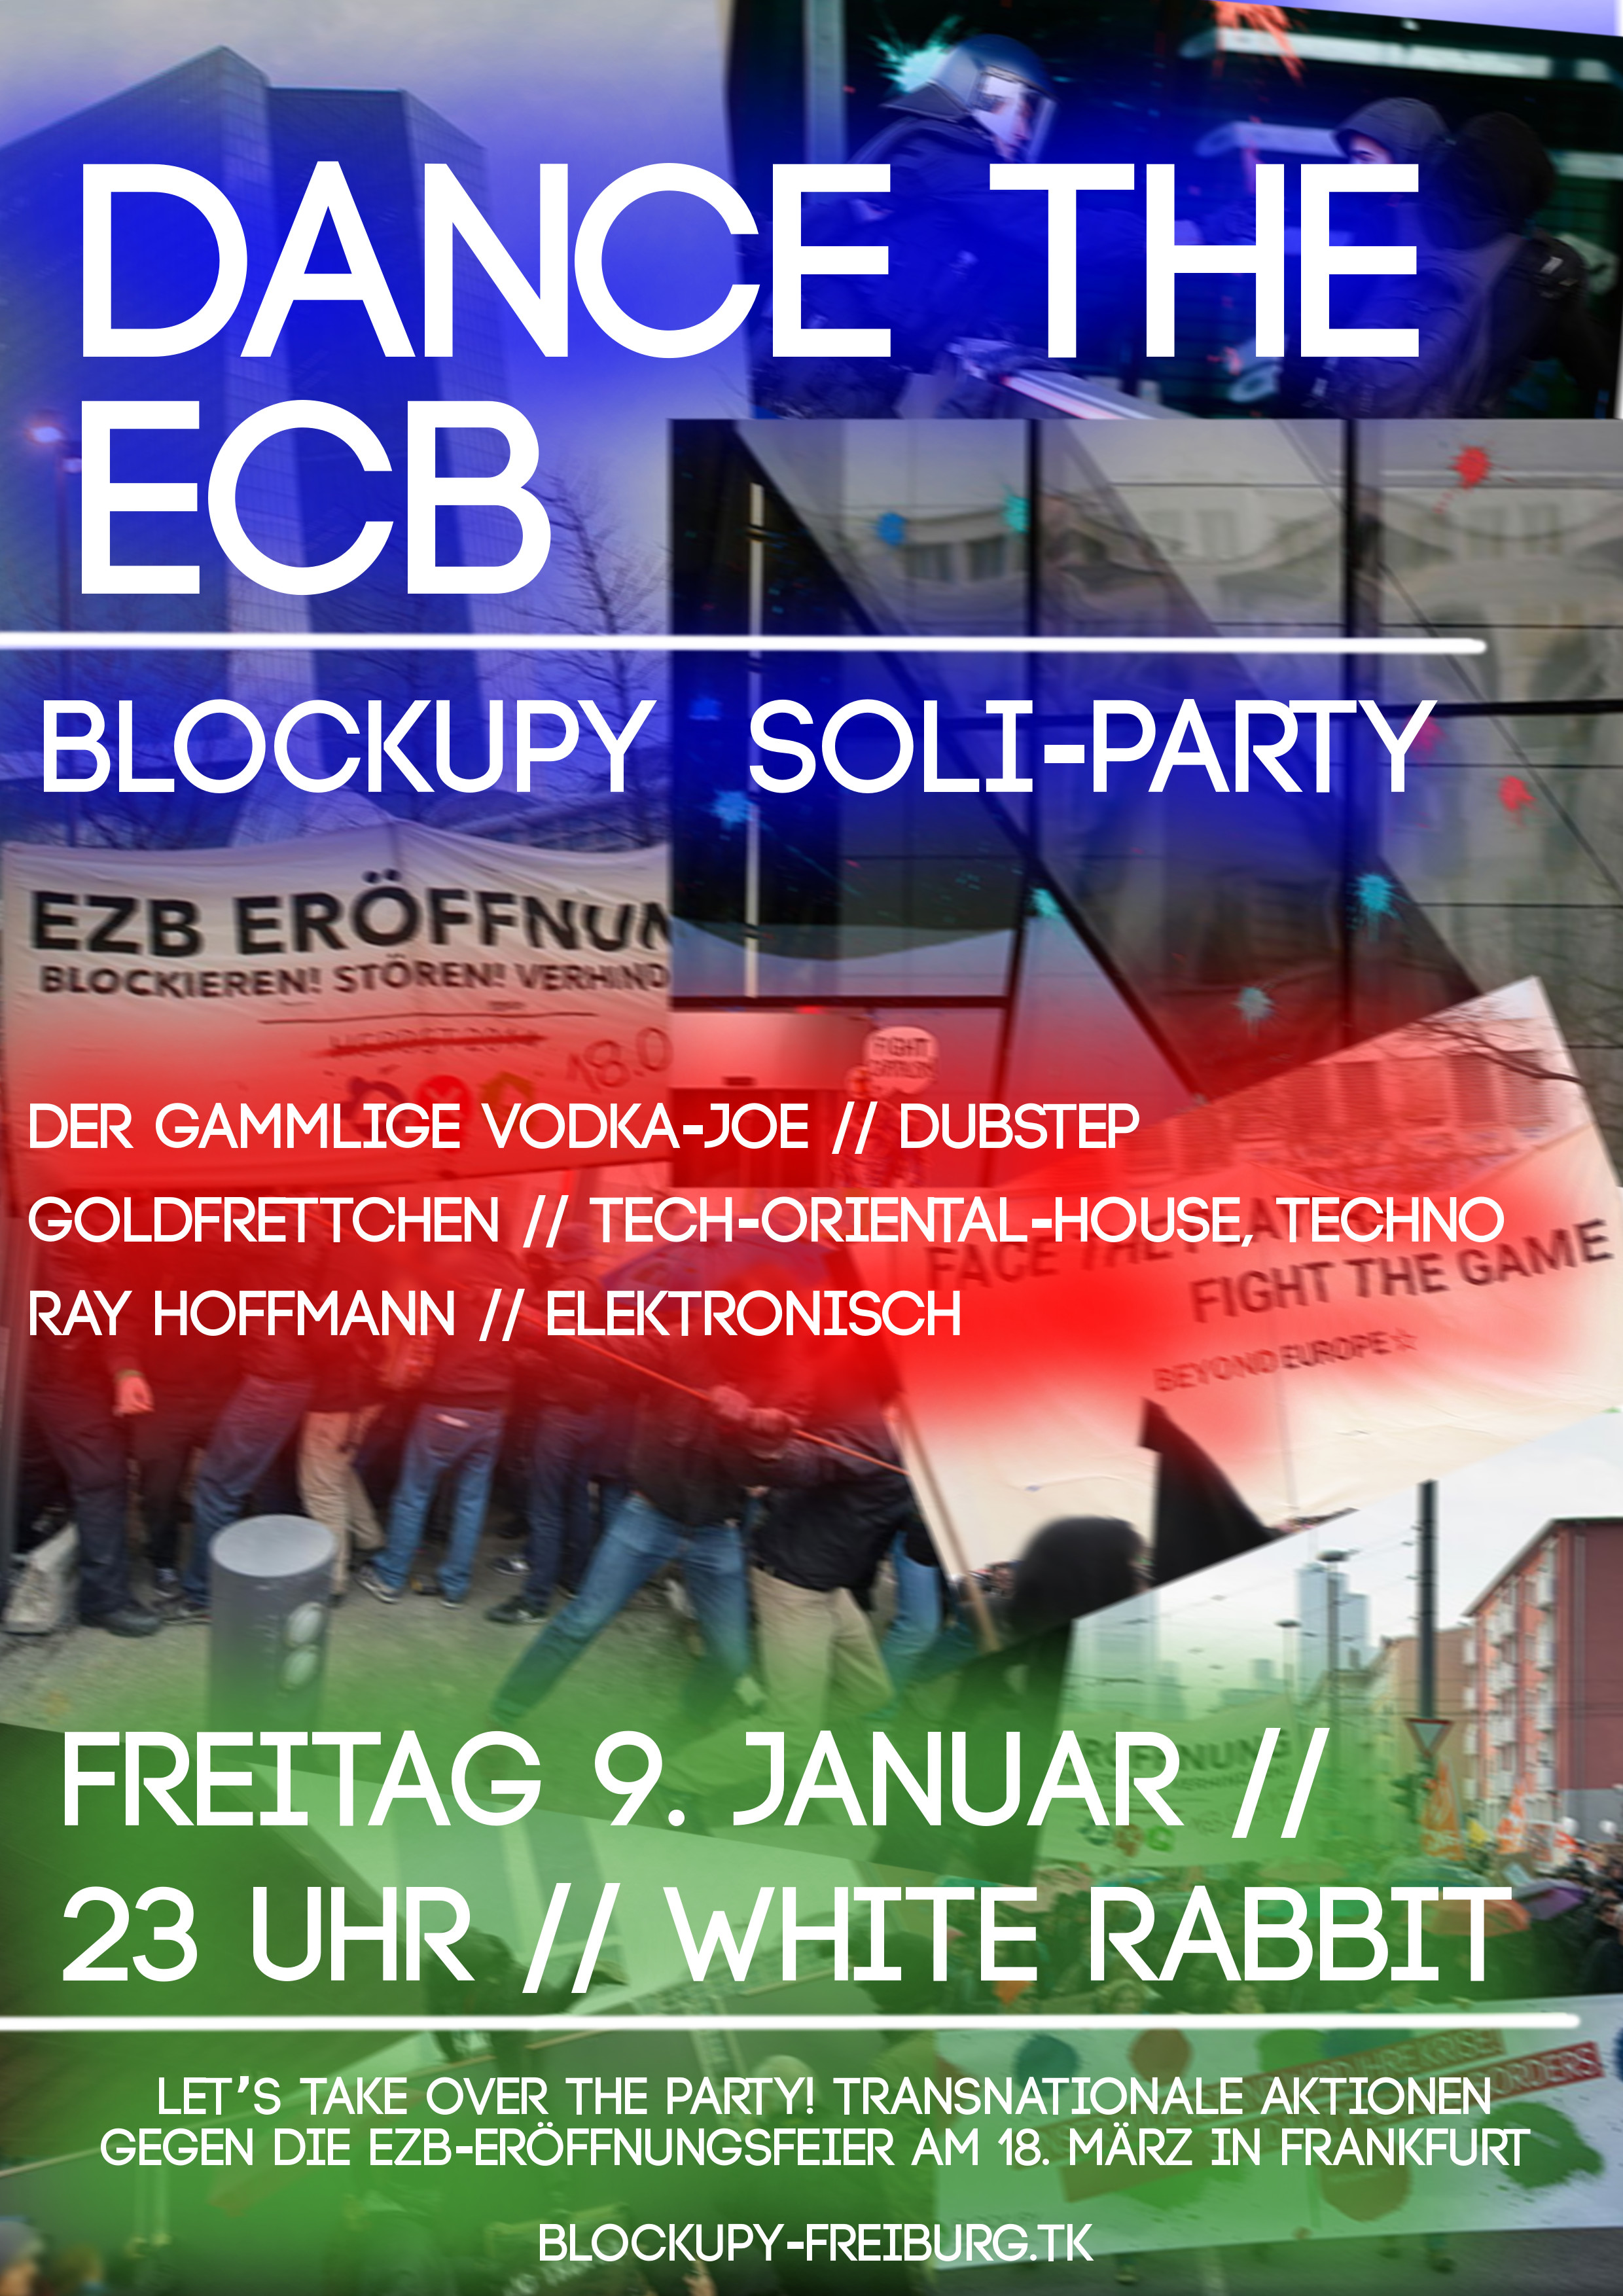 9. Januar Blockupy Soli-Party: Let’s dance the ECB!